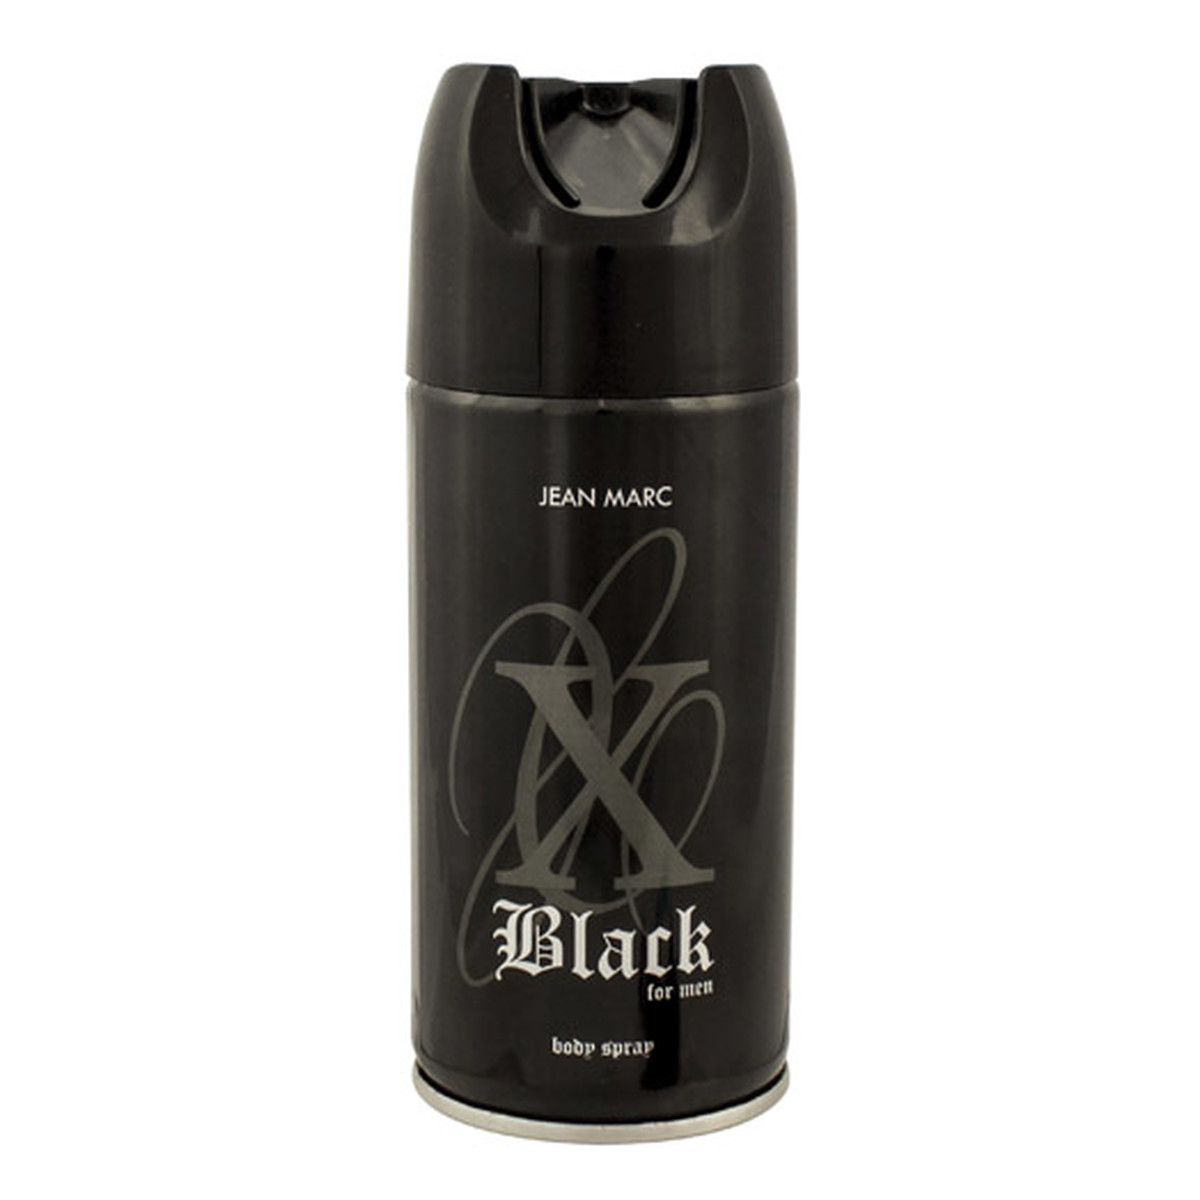 Jean Marc X Black Dezodorant spray 150ml